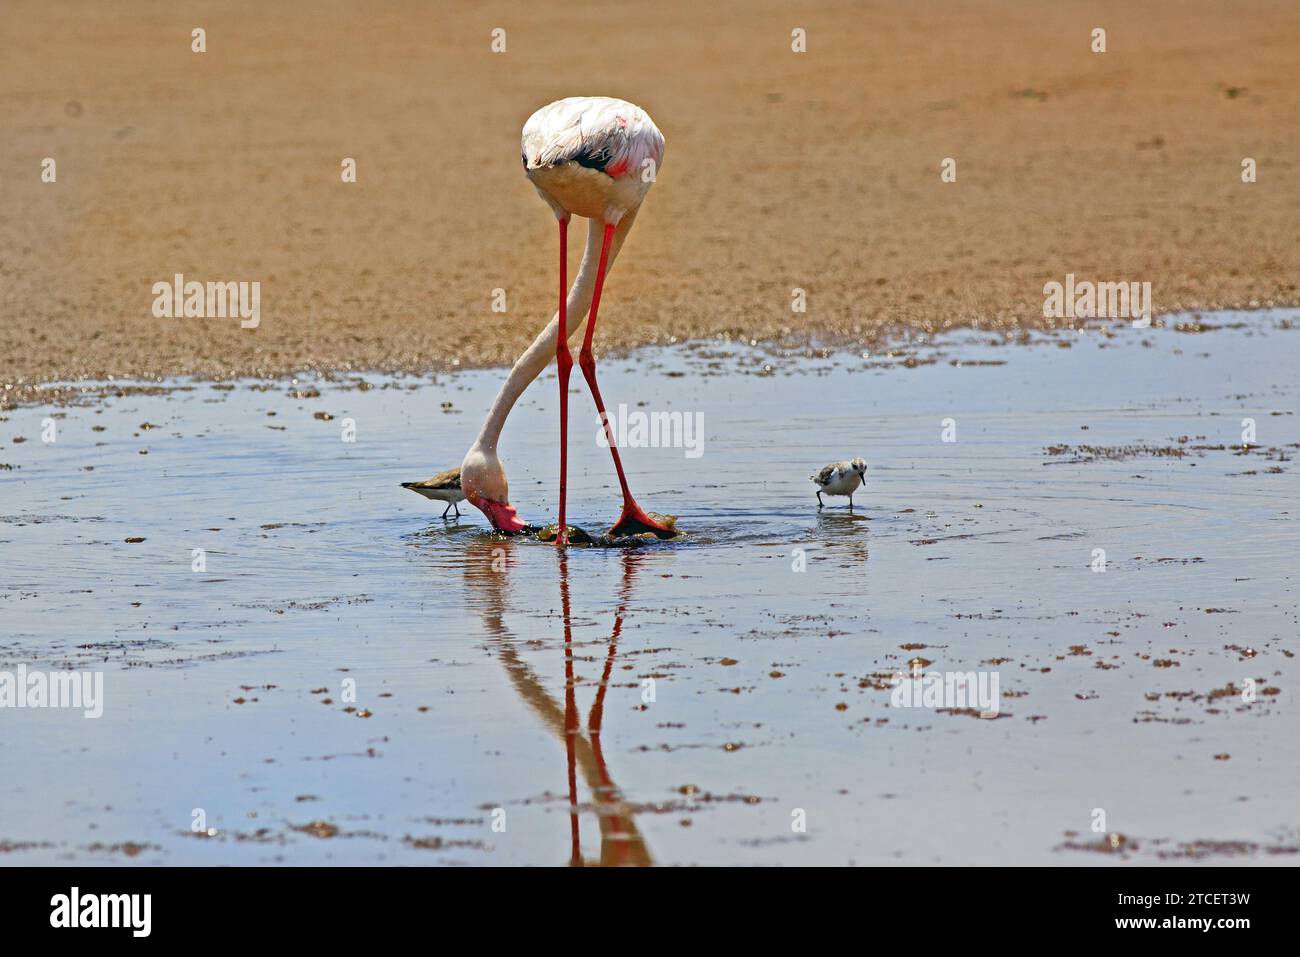 Ein einsamer großer Flamingo, der das Wasser für Nahrung absaugt, mit kleinen Wasservögeln in der Nähe - Flamingo Lagoon, Namibia Stockfoto